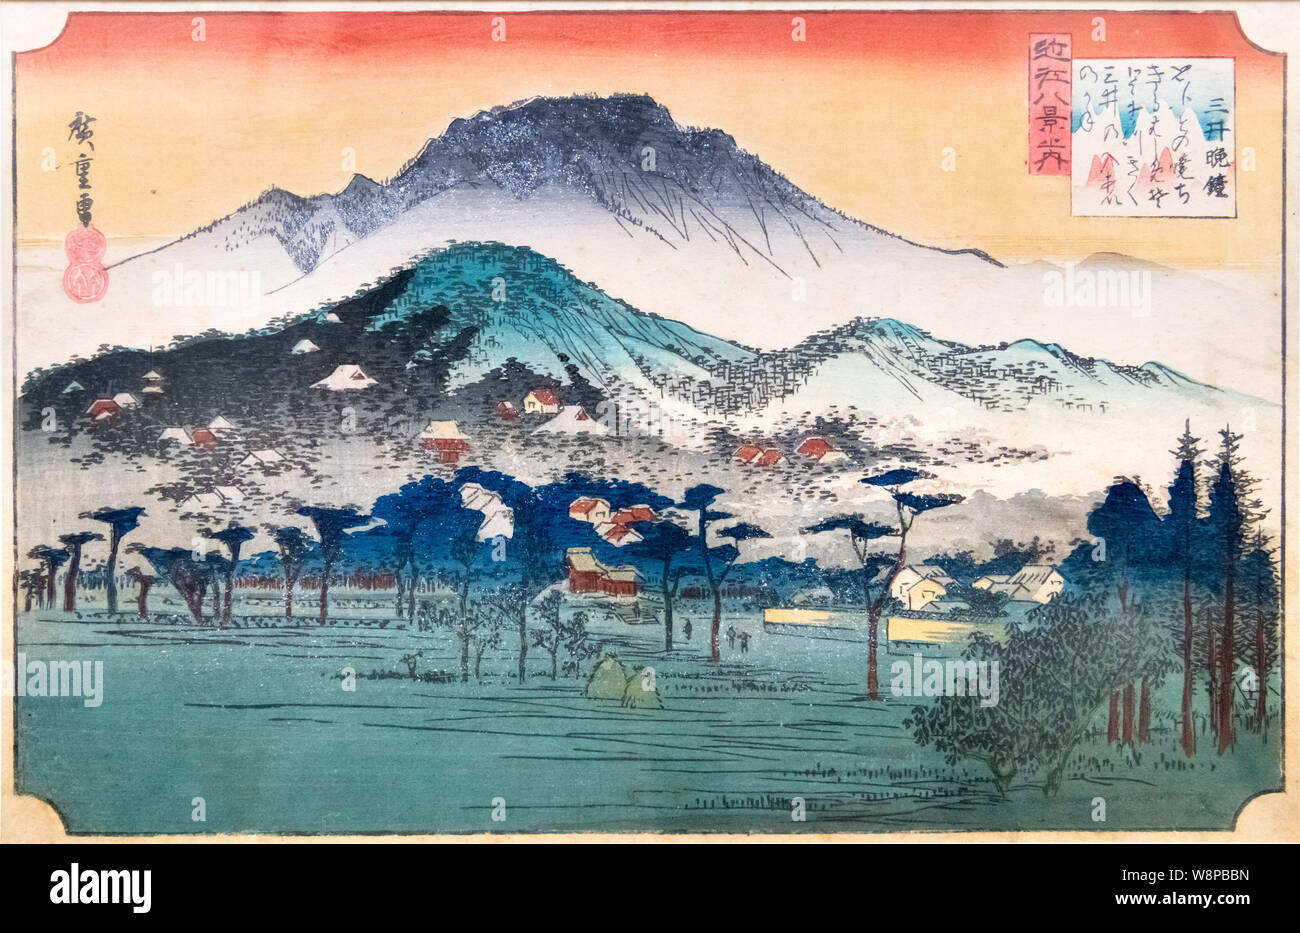 Les Huit Scènes de la Province d'Omi : Soirée à Bell Temple Mii par Utagawa Hiroshige (1797 -1858), la période Edo, 19e siècle, Musée National de Tokyo, Japon Banque D'Images